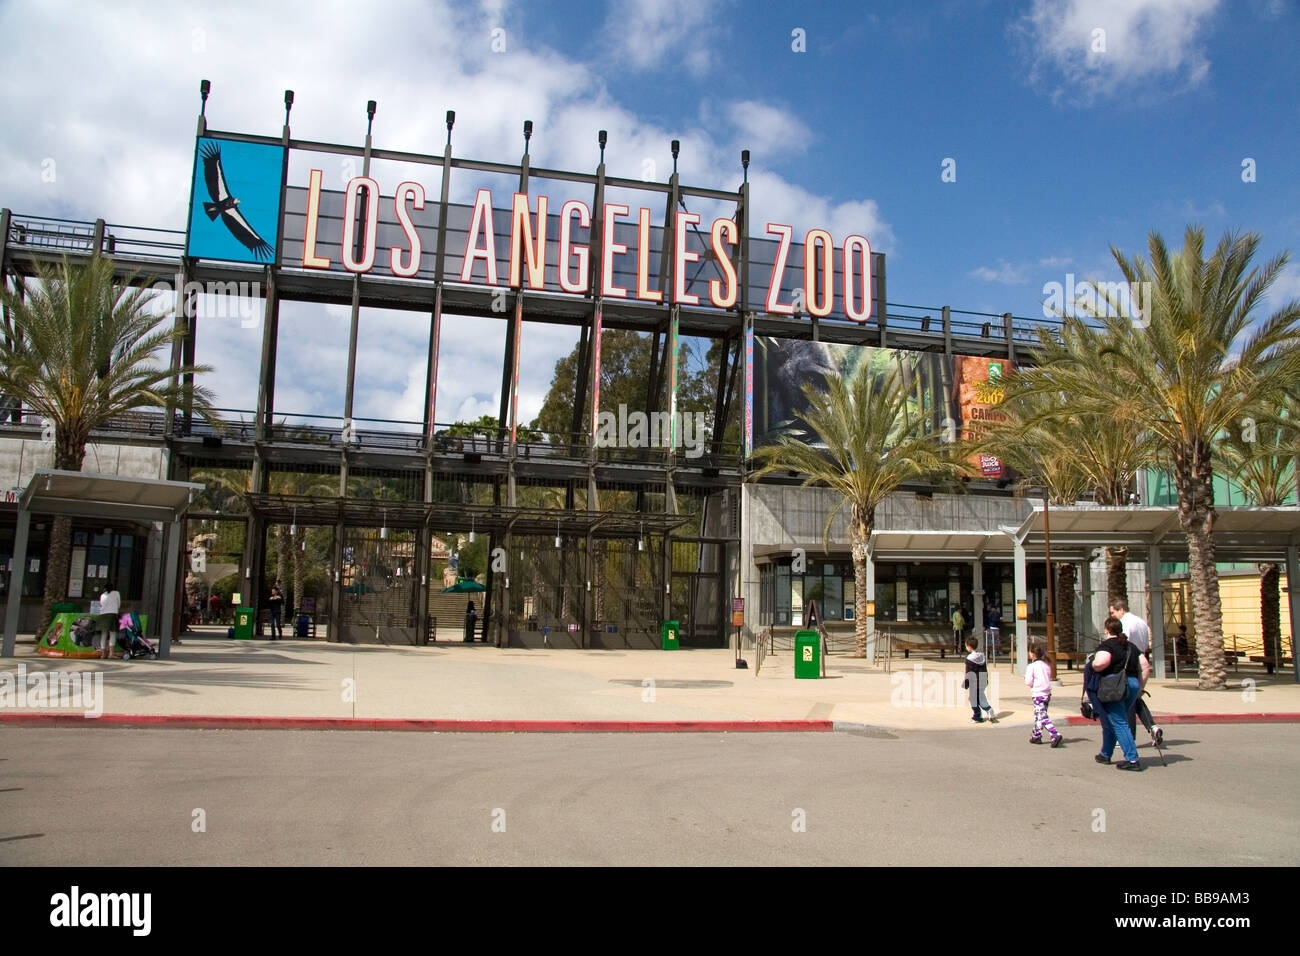 Entrée du zoo de Los Angeles situé dans la région de Griffith Park Los Angeles California USA Banque D'Images